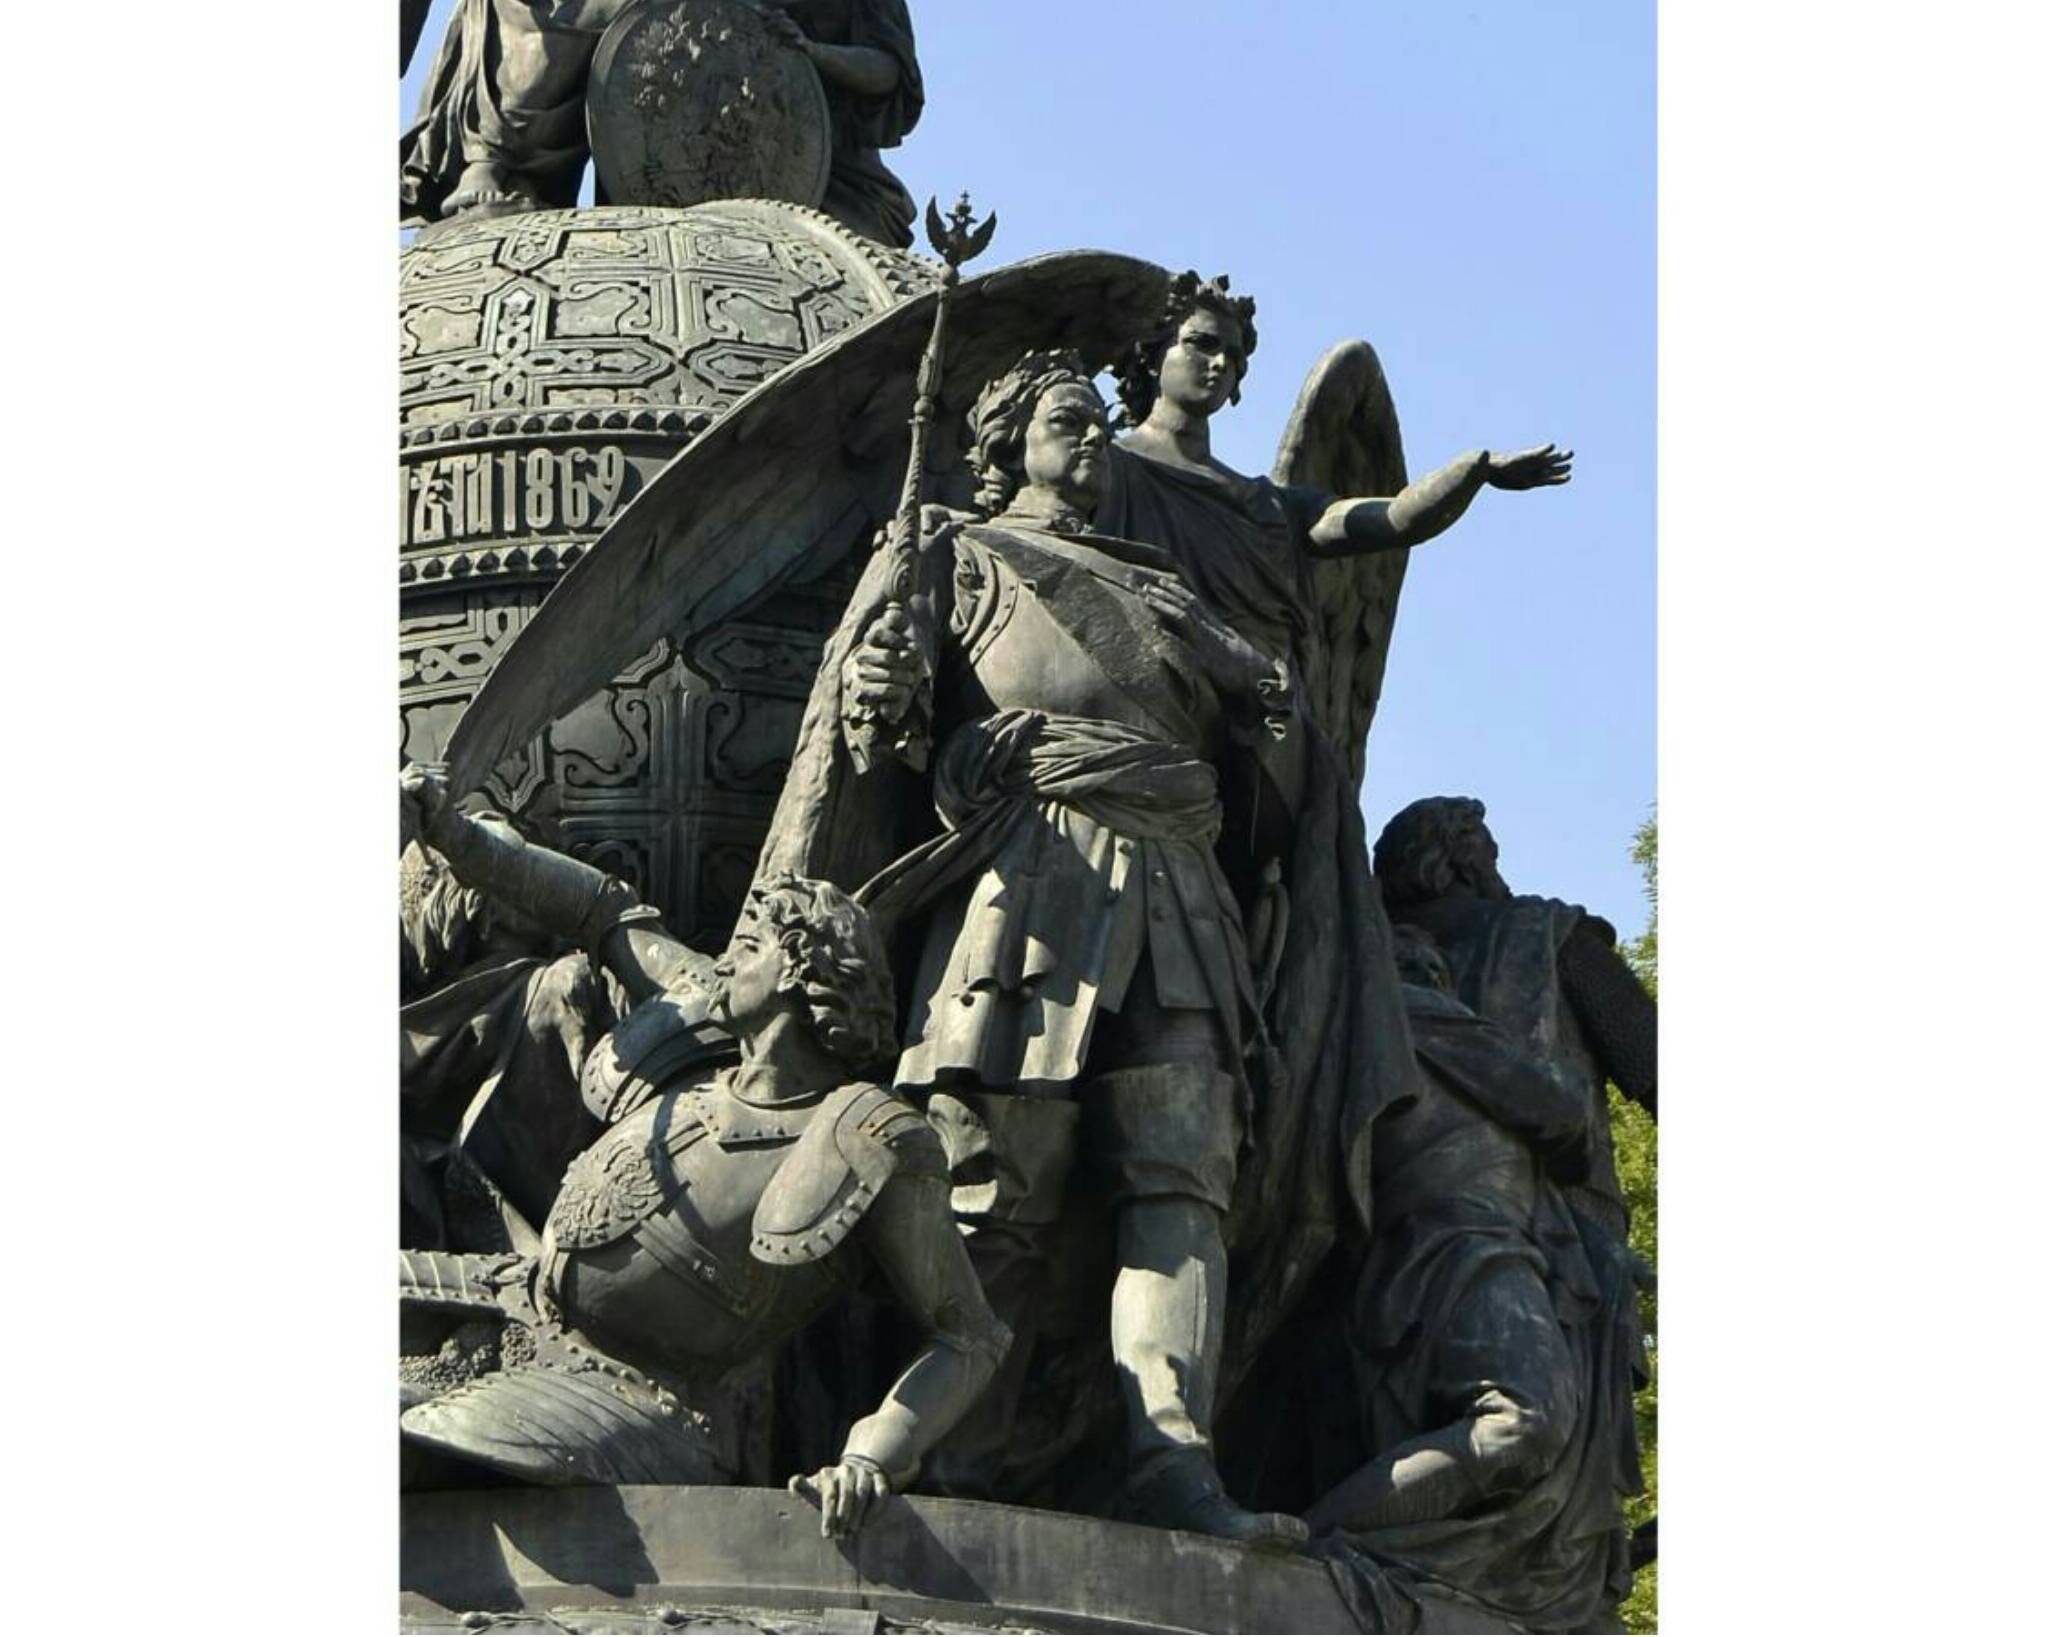 Фигура Петра I на Памятнике «1000-летие России» в Великом Новгороде. Фрагмент (фото: MrStepanovka CC BY 3.0)